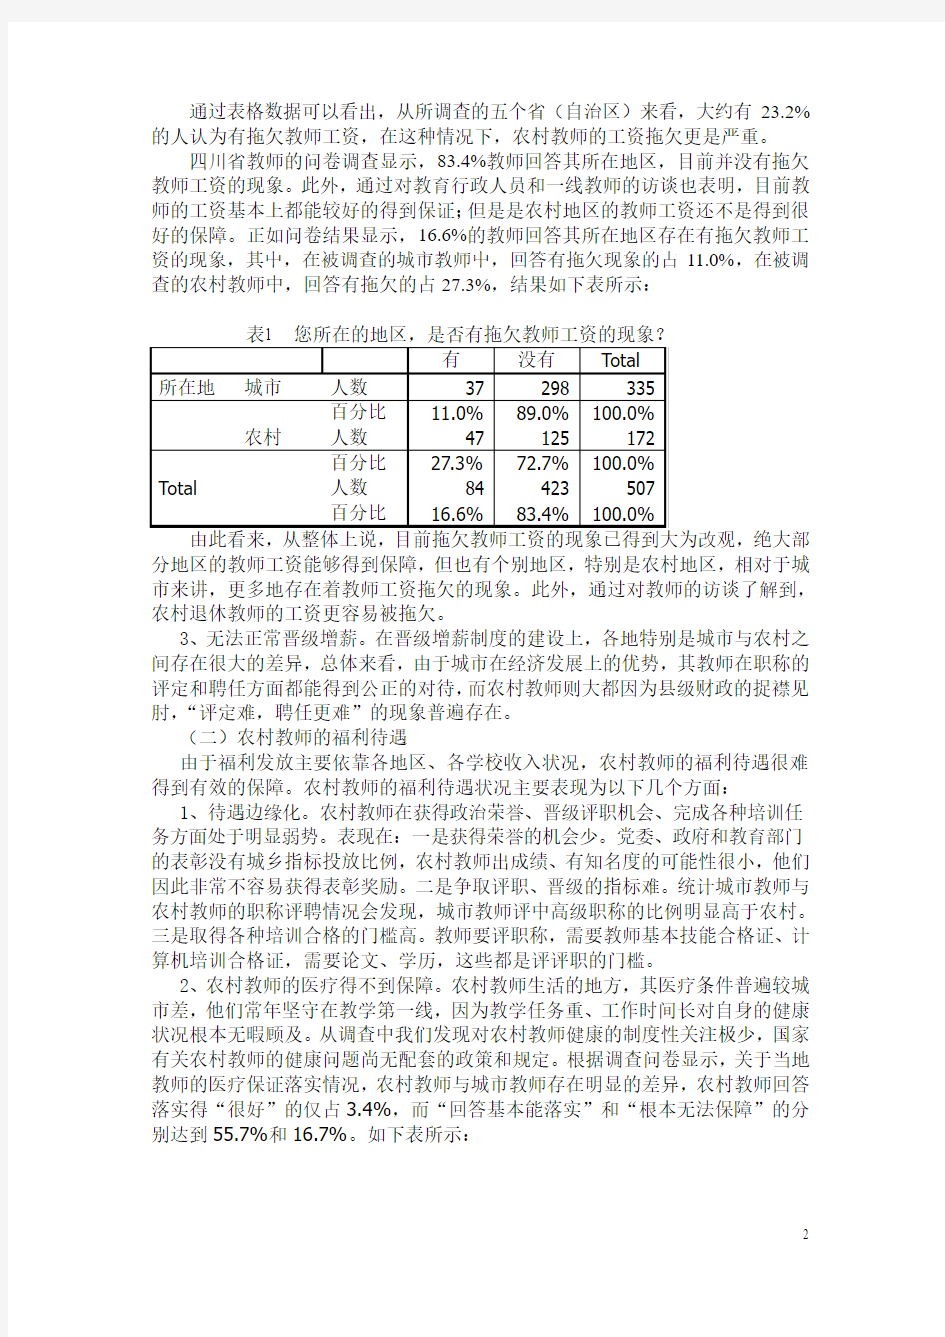 中国教师队伍现状调查研究报告-农村教师